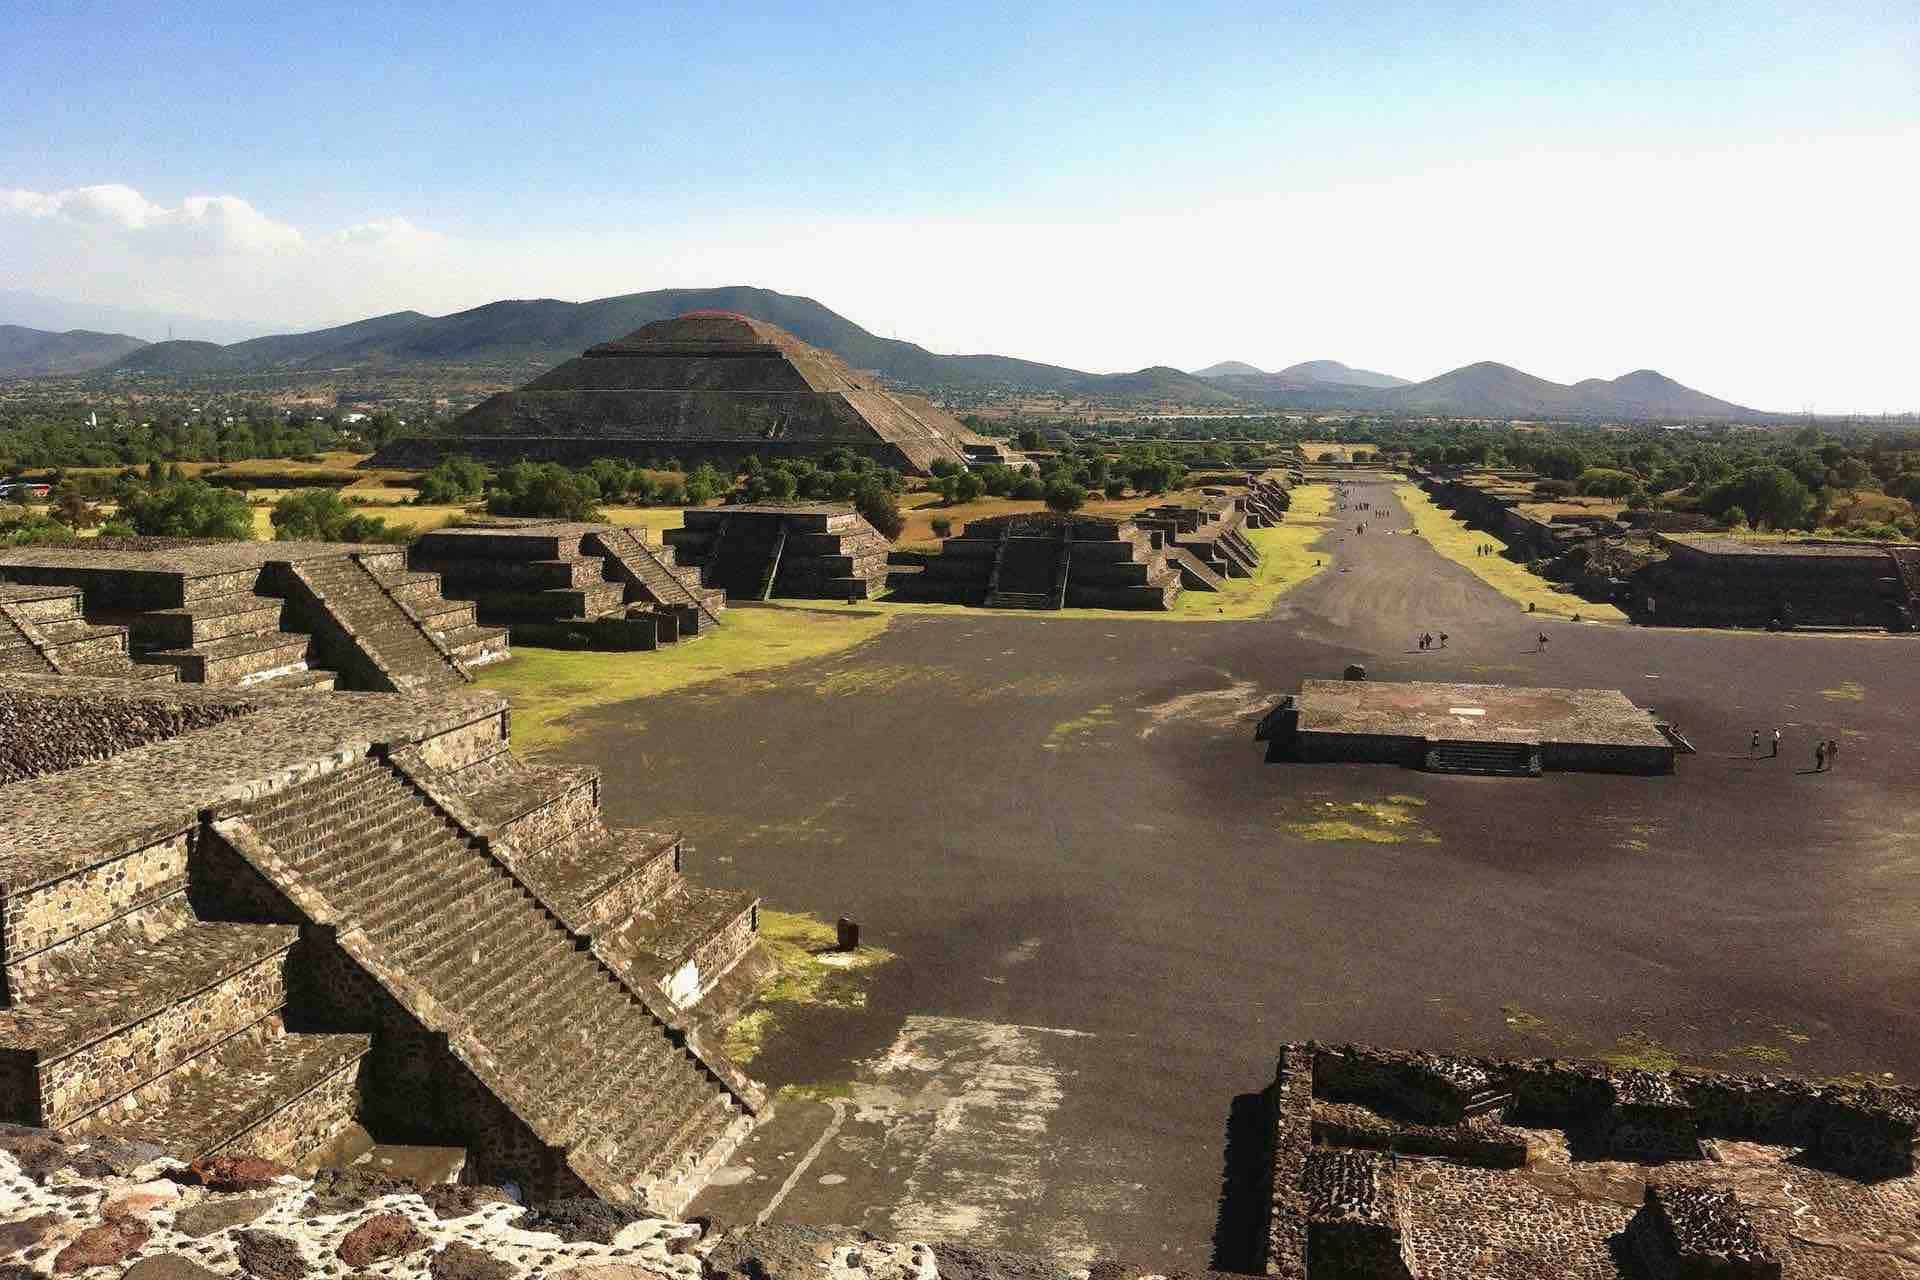 Teotihuacán Pyramids pramids square